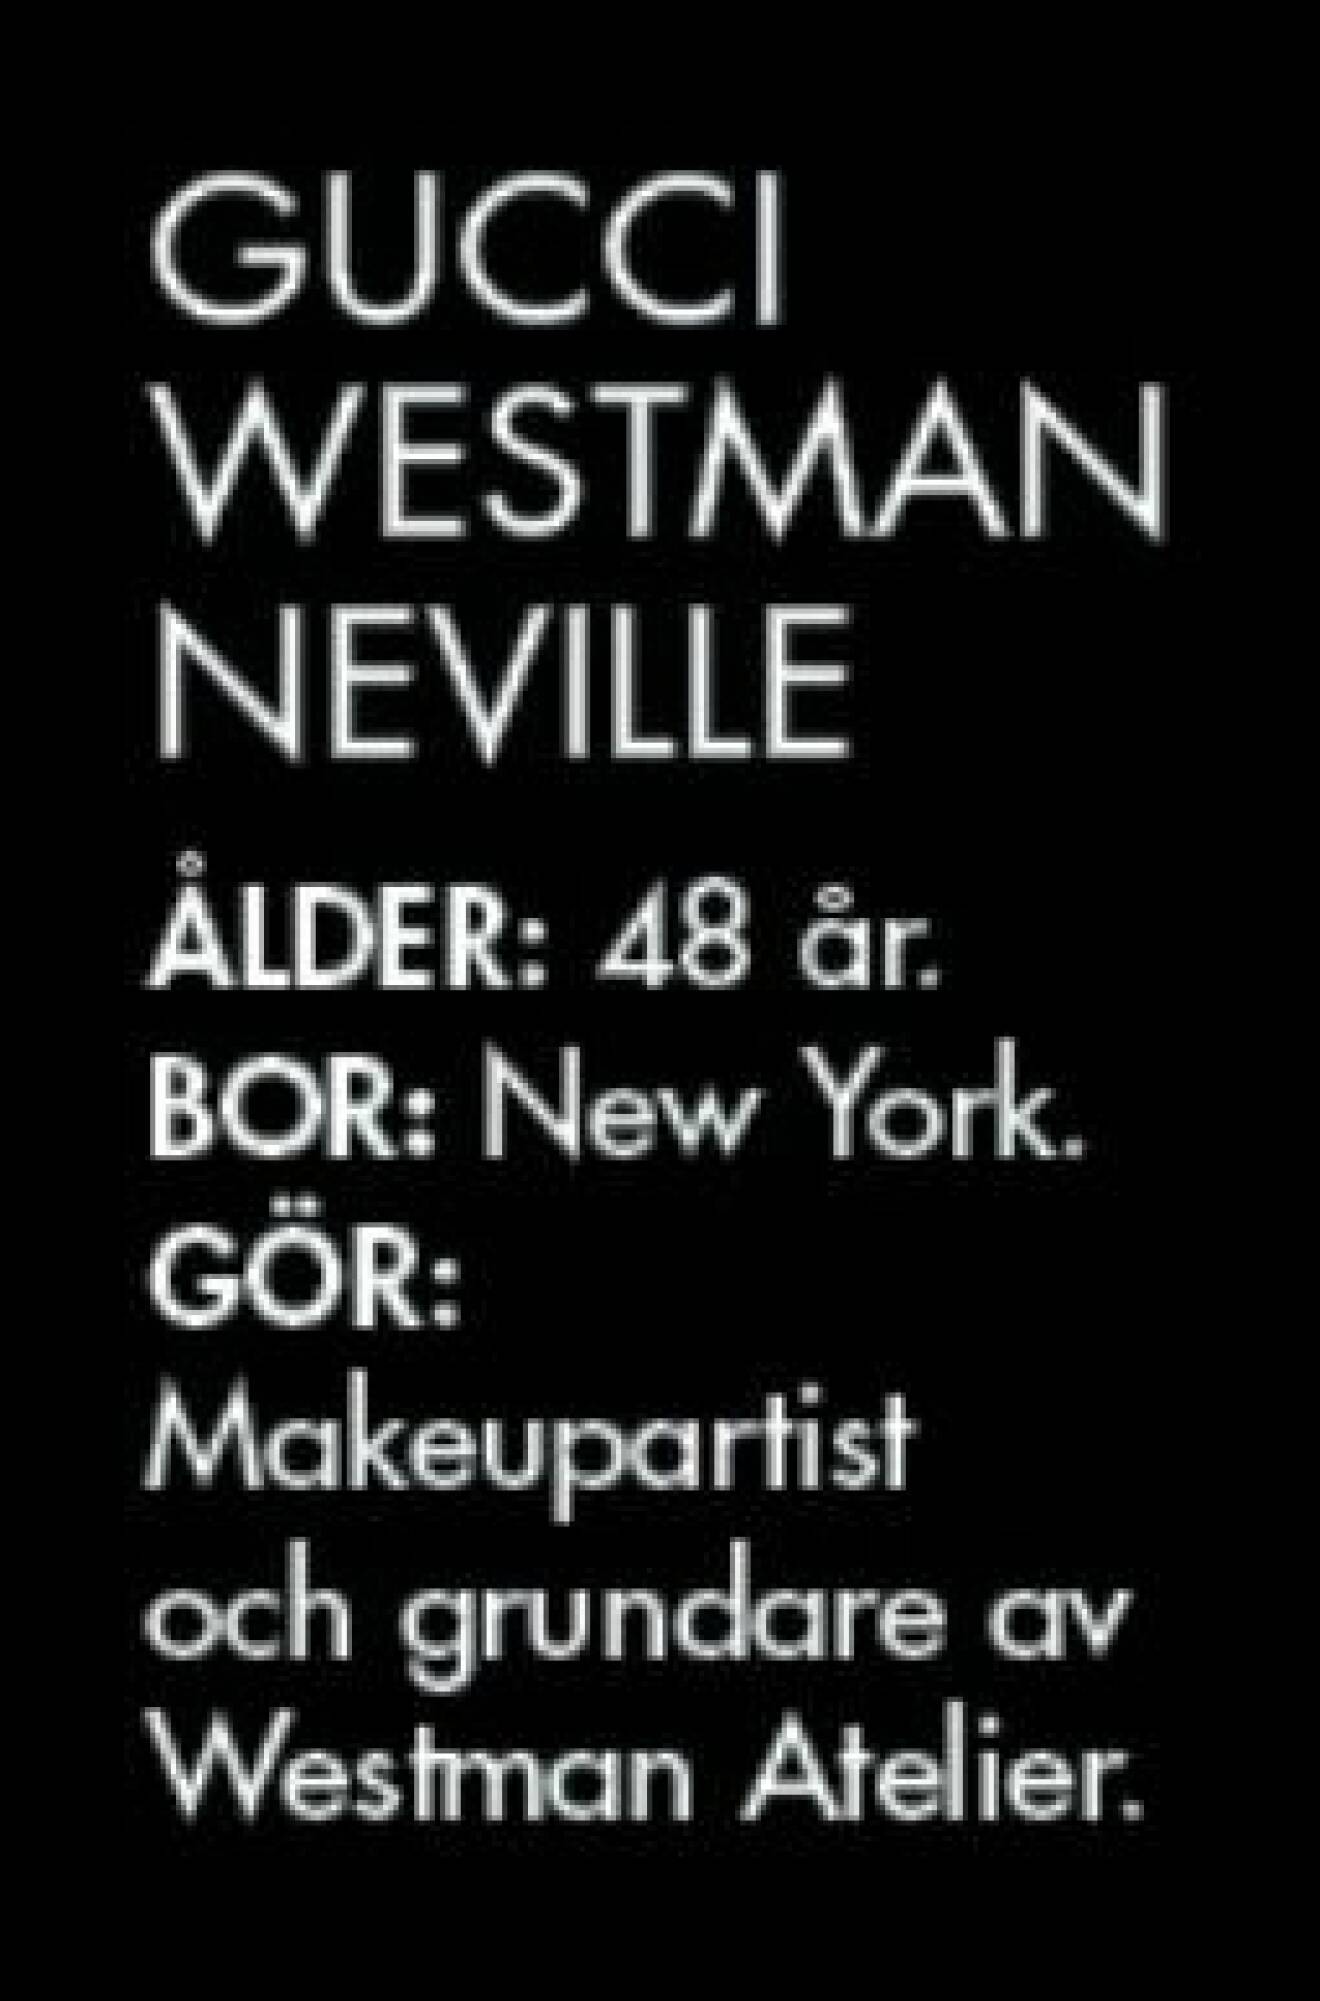 Gucci Westman Neville ÅLDER: 48 år. BOR: New York. GÖR: Makeupartist och grundare av Westman Atelier.